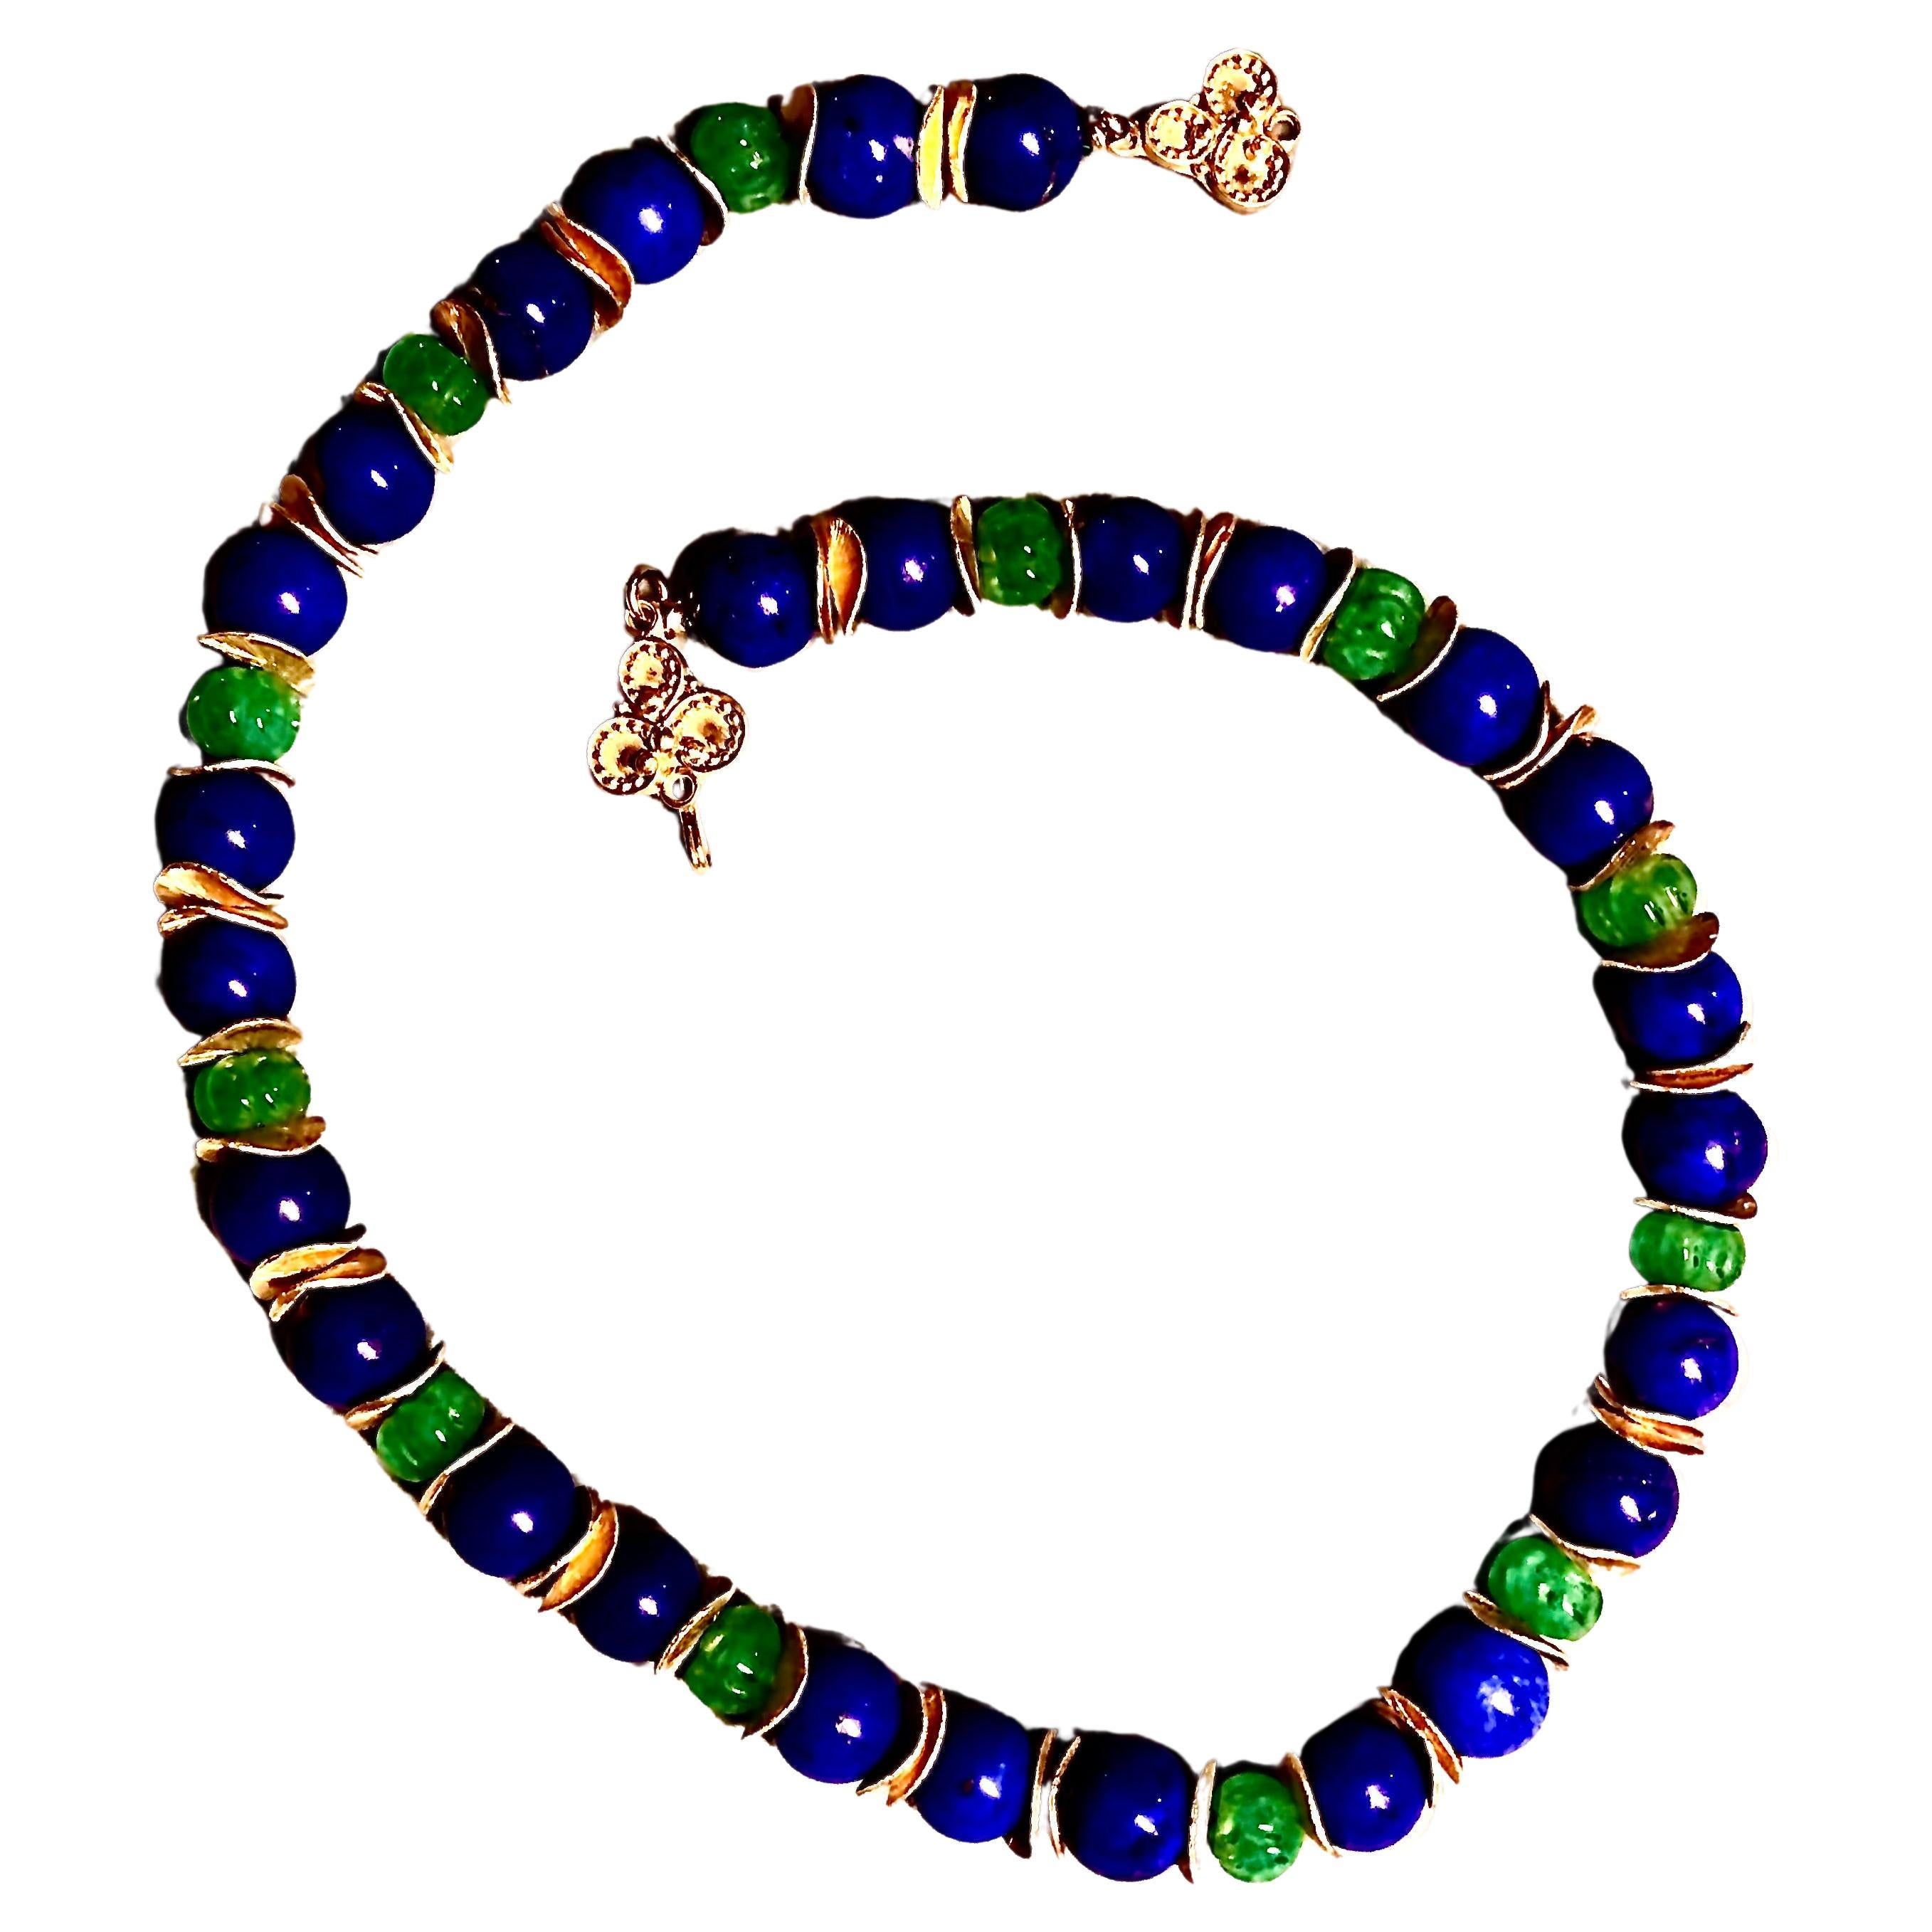 Schicke und auffallend reiche blaue Lapis und Smaragd Melone tief geschnitzt Perlen. Die Steine haben eine schöne und intensive, gleichmäßige Färbung.

Die Perlen sind durch wellenförmige, strukturierte Scheiben getrennt, die dem ganzen Stück die